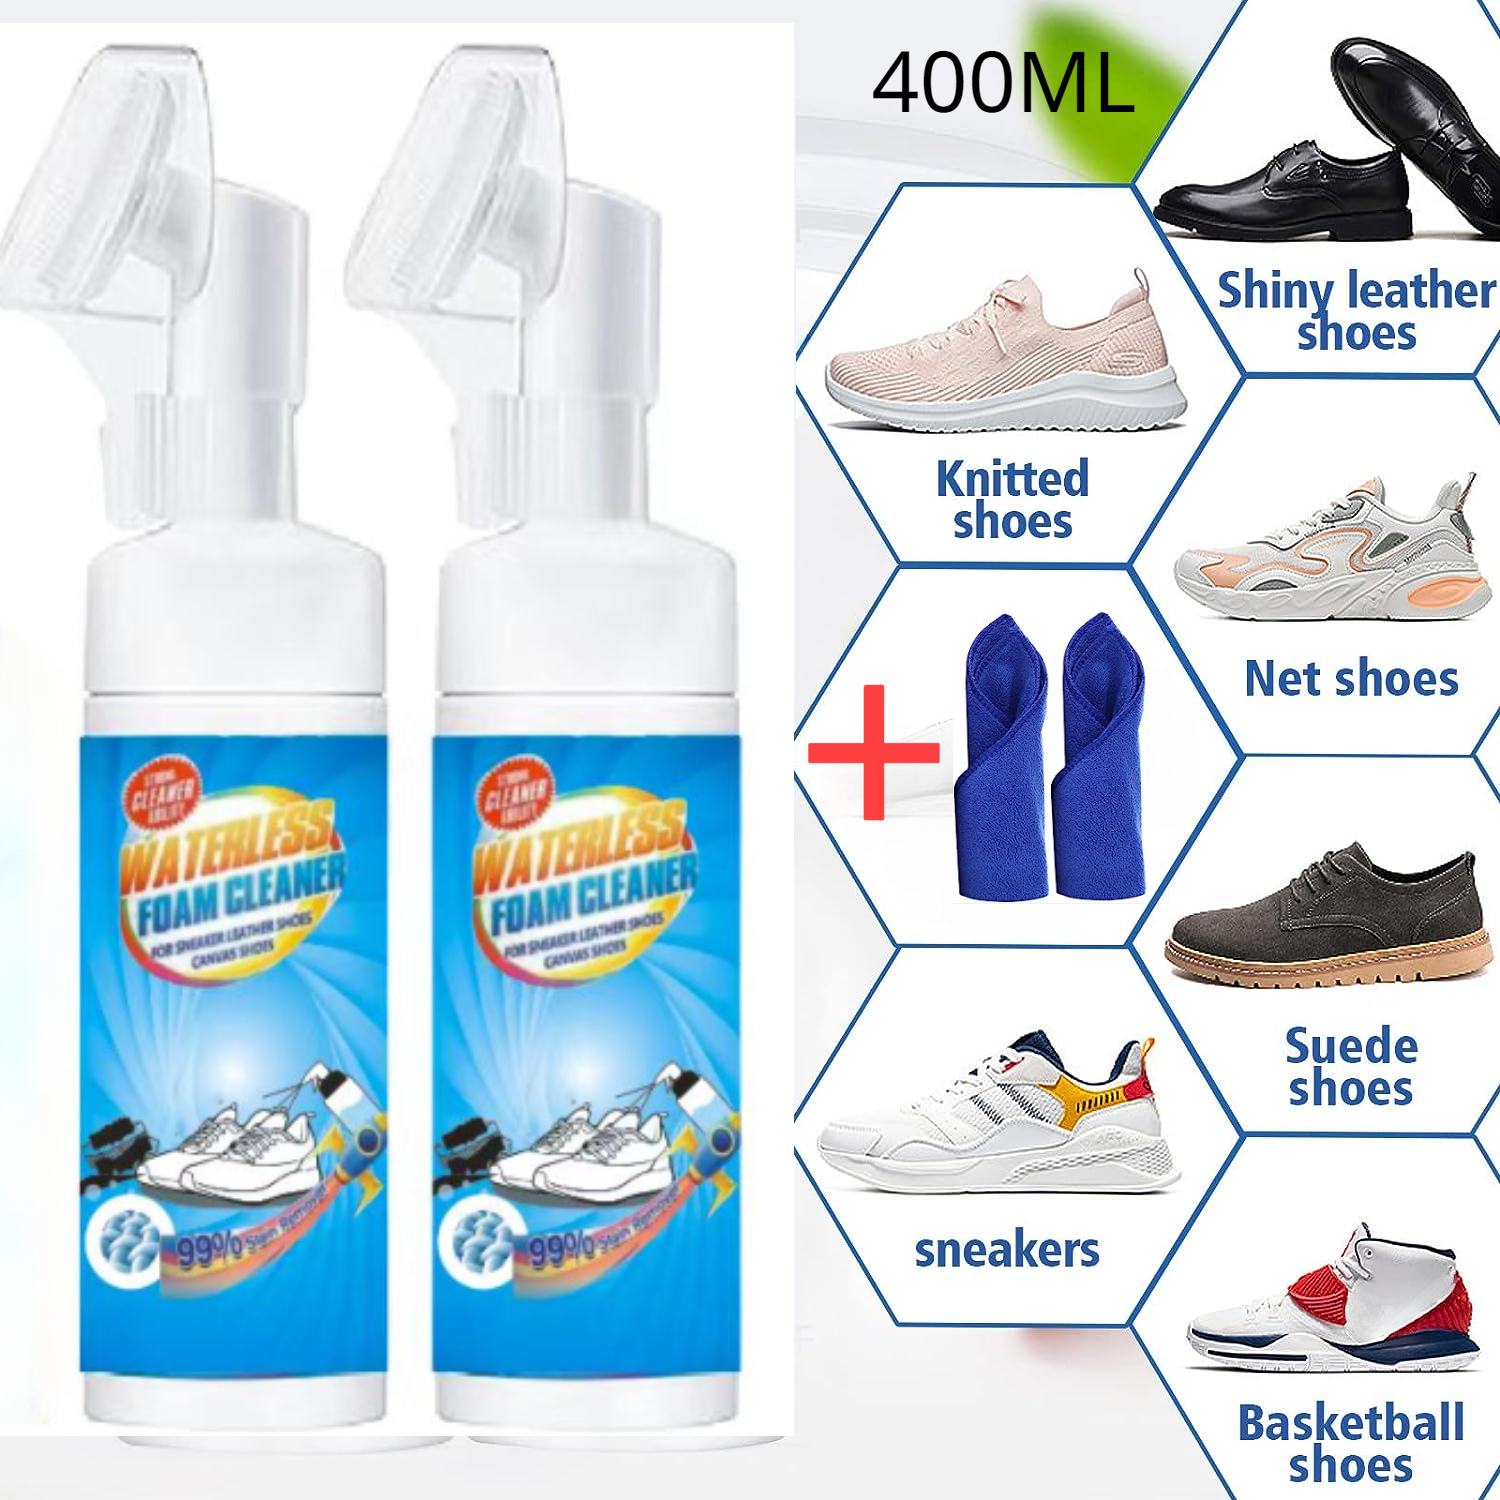 Kit de nettoyage - Sneakers - Baskets - Chaussures - Chiffon - Brosse -  Détachant - Meilleur prix